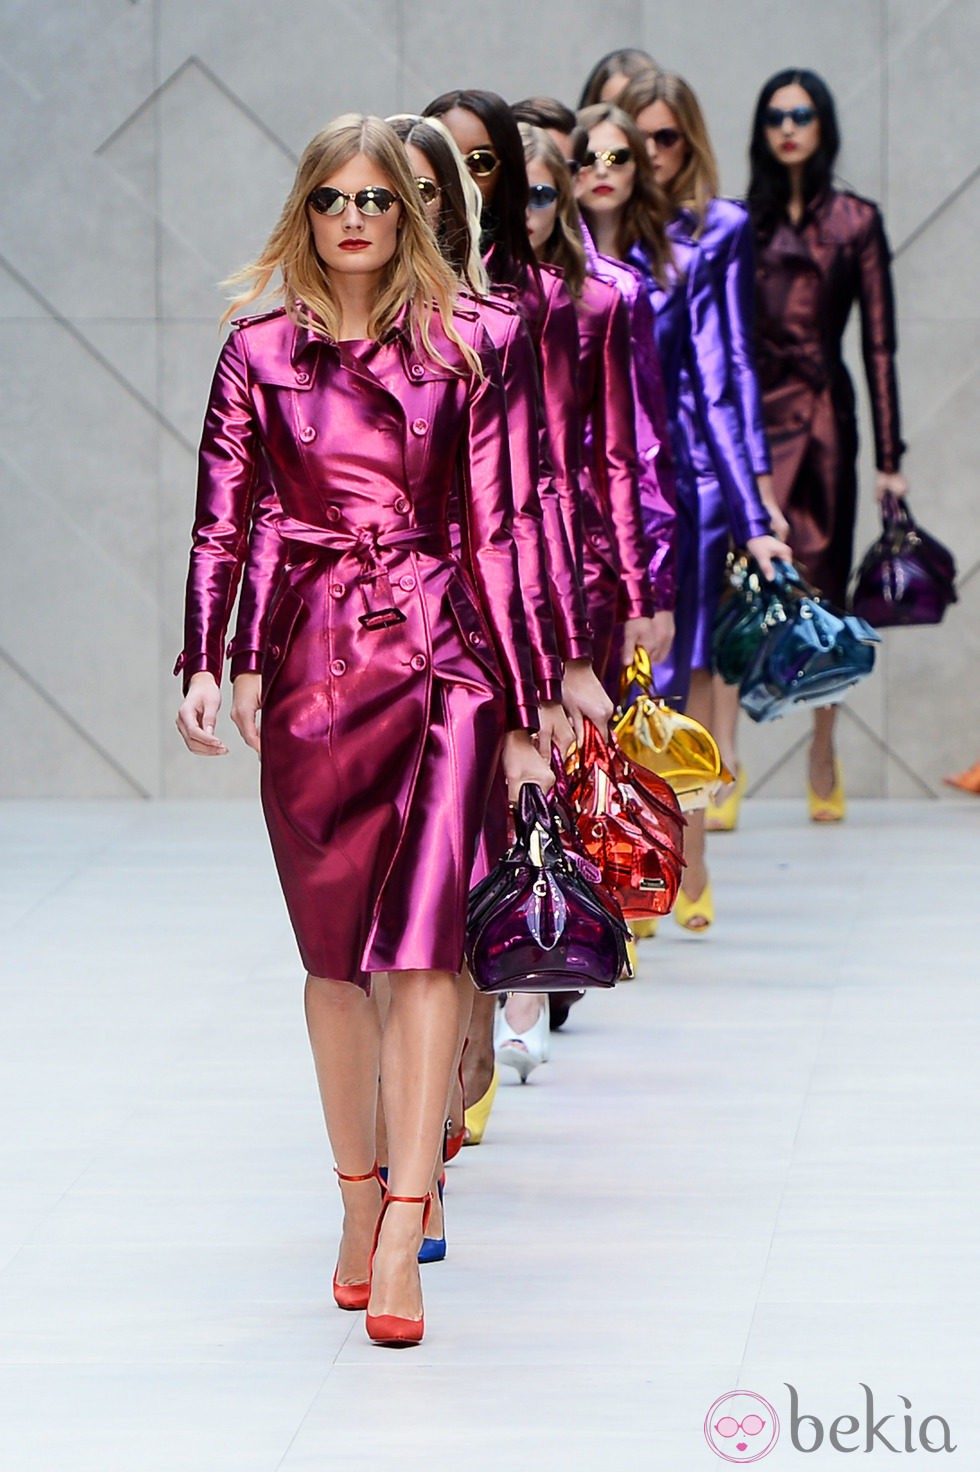 Burberry propone colores metalizados en la Semana de la Moda de Londres primavera/verano 2013